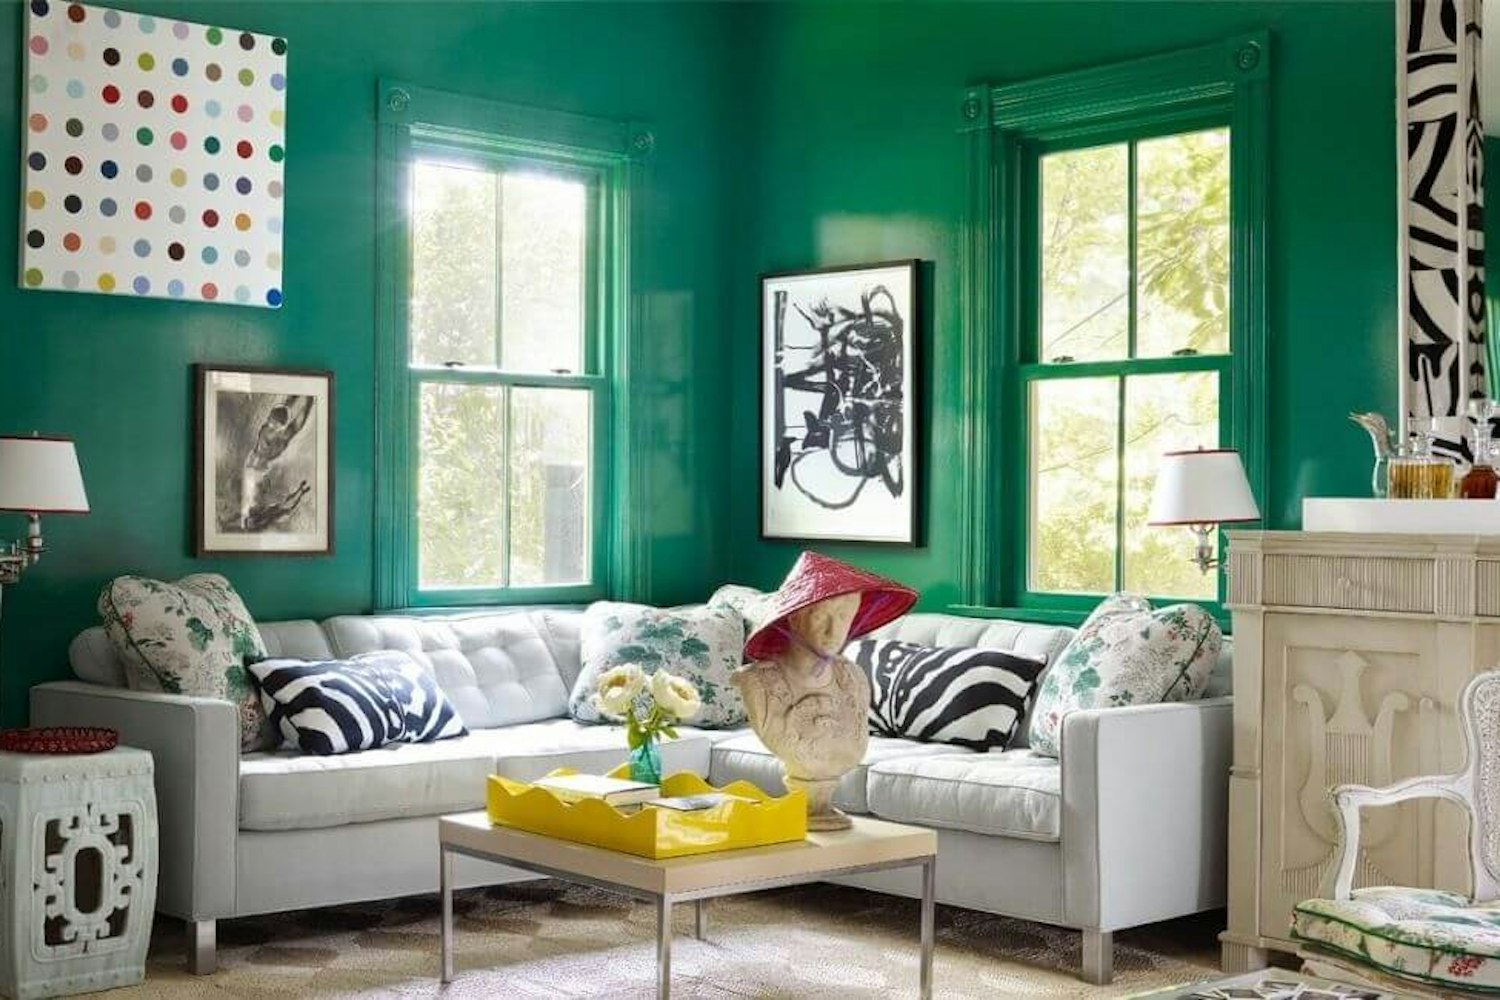 Decoration tendance avec couleur verte